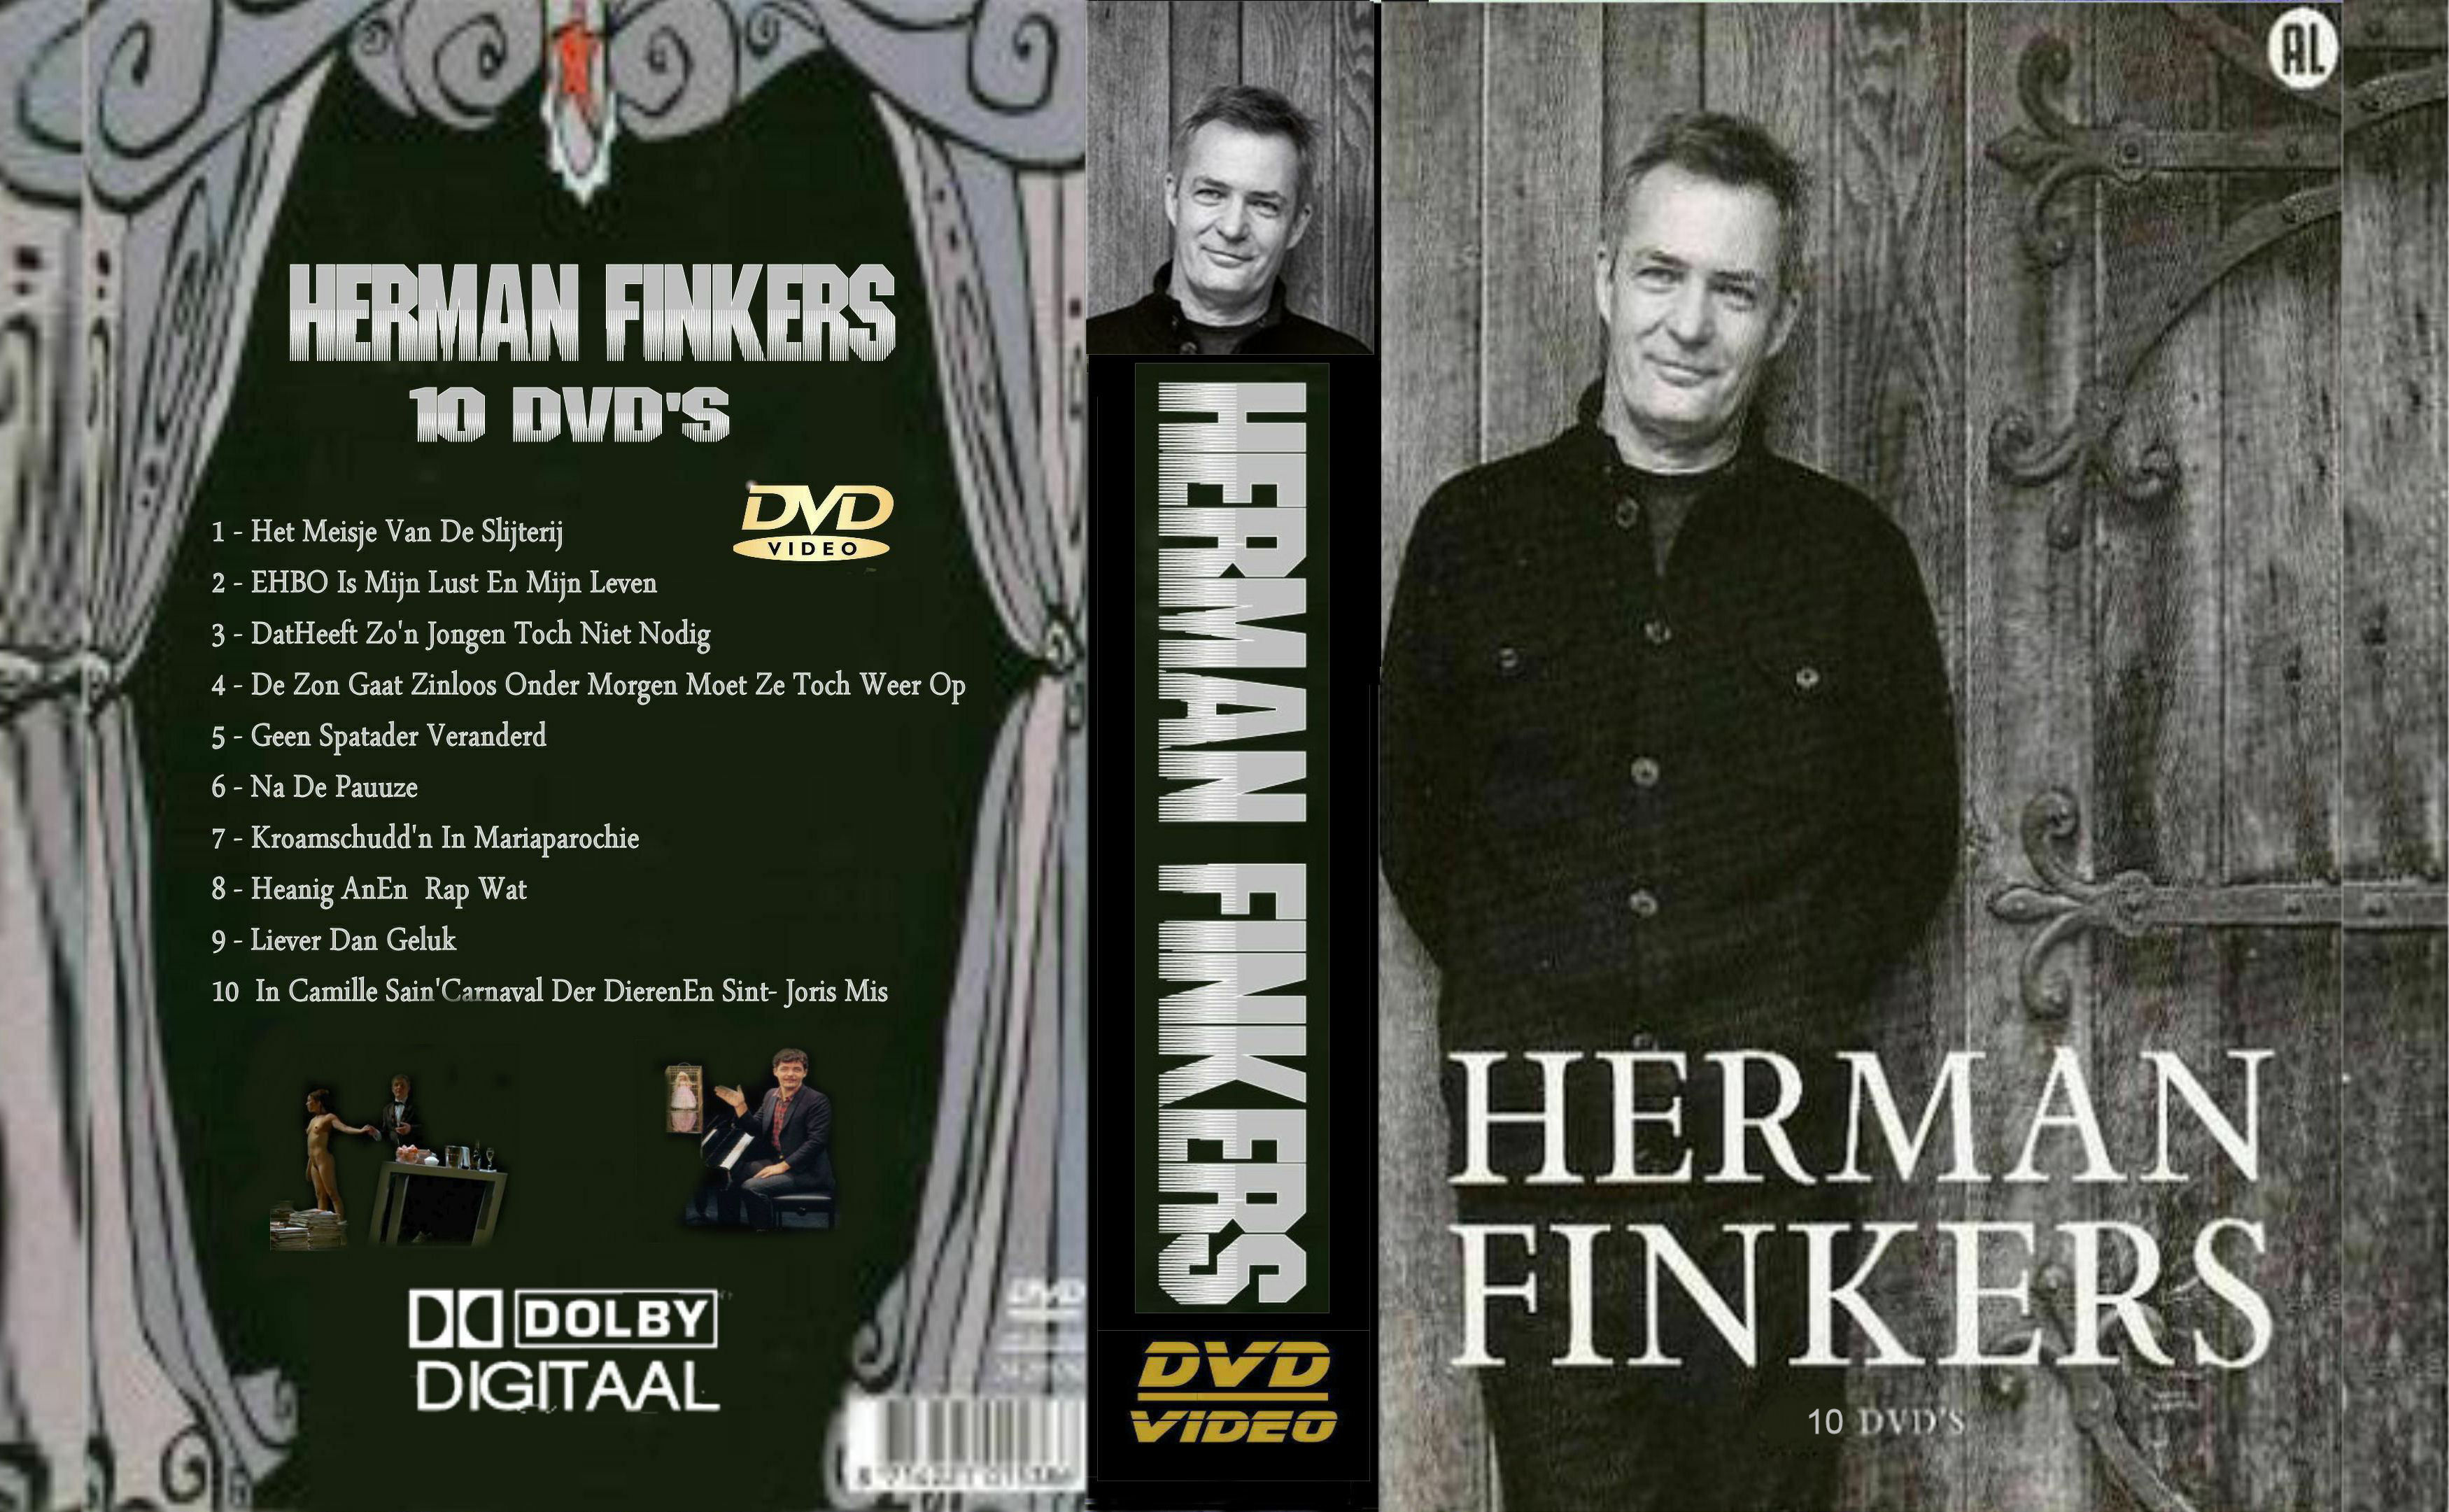 Herman Finkers Collectie DvD 7